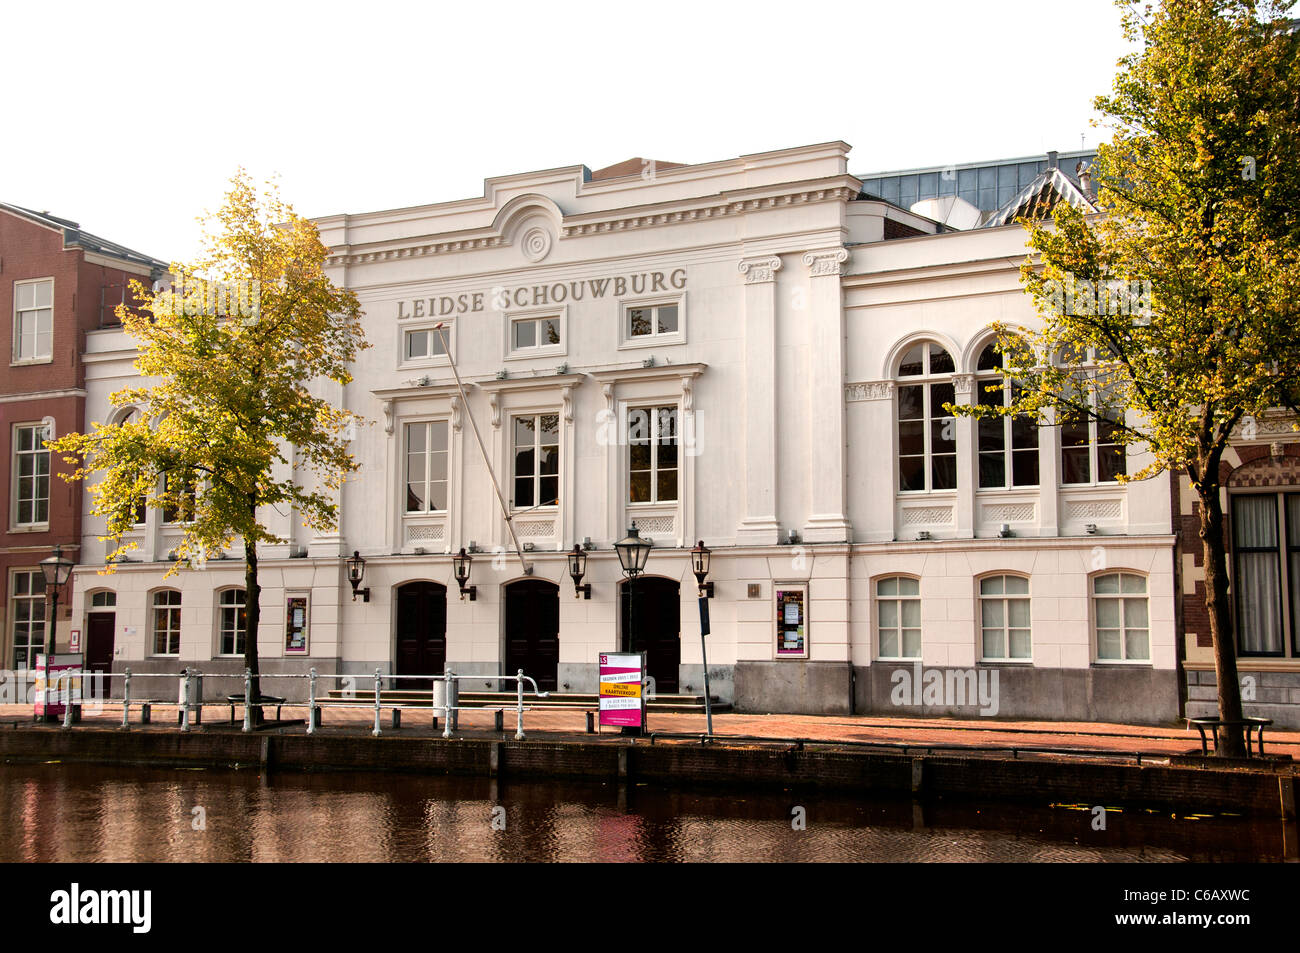 Leidse Schouwburg Theater 1705 Oude Vest Leiden Netherlands Stock Photo